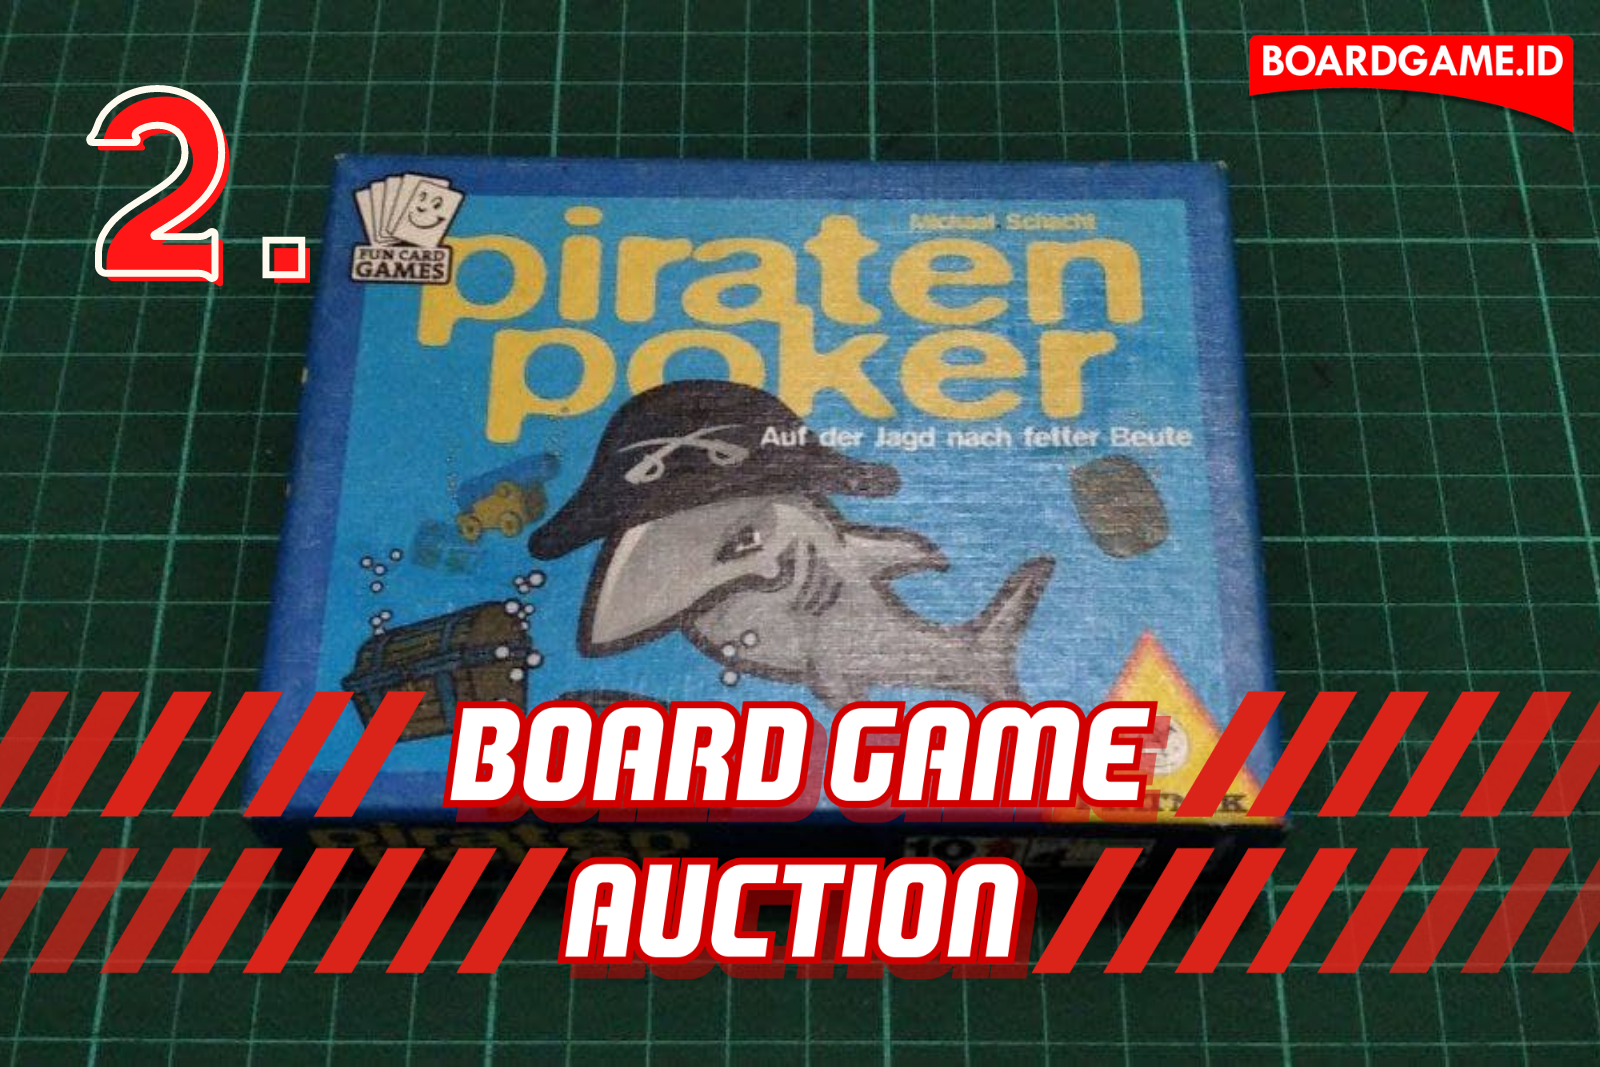 Lelang Board Game Bekas Mulai Dari Rp100.000: Piratenpoker